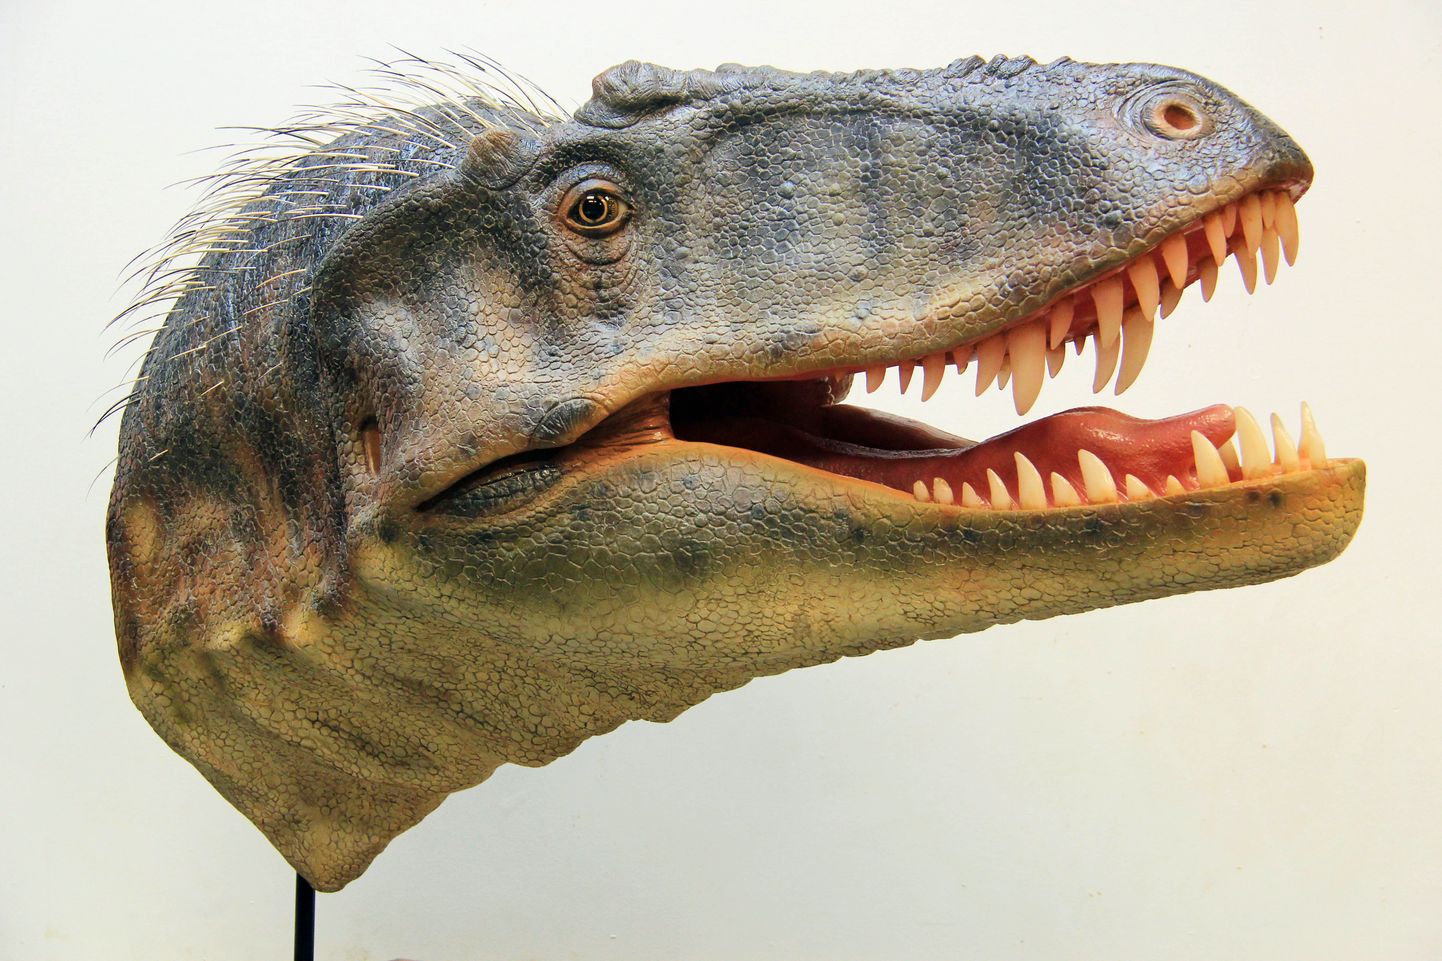 Salt Lake City loodusloomuuseumi väljastatud jäädvustusel kujutatakse Lythronax argestes’t.